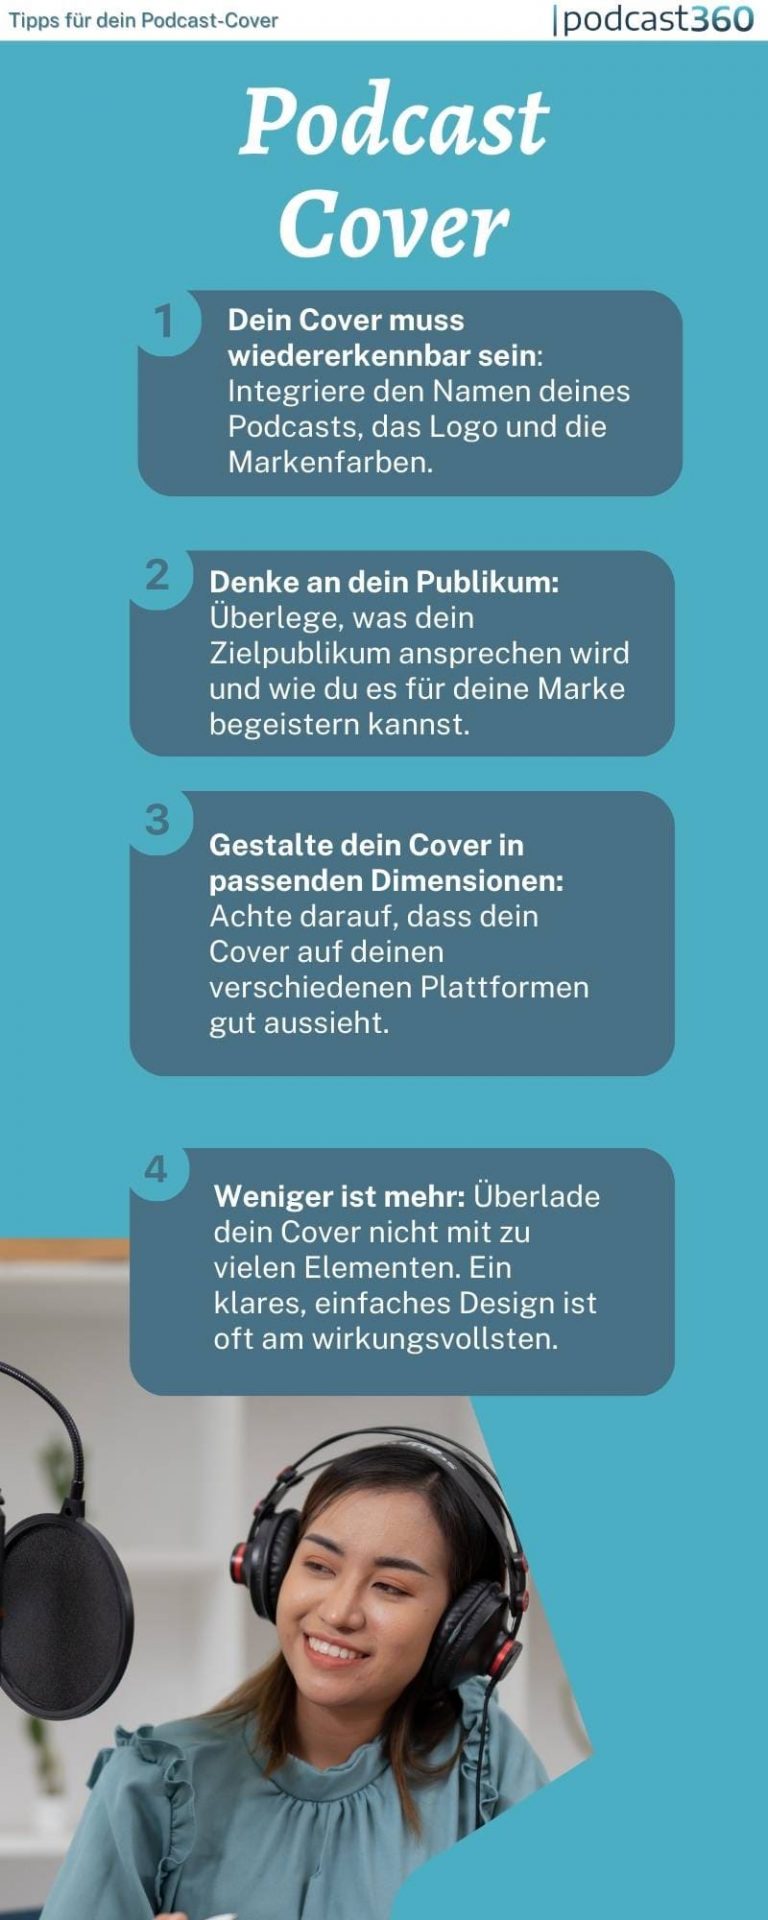 Eine Infografik mit dem Titel „Podcast Cover“ mit vier Tipps auf Deutsch für die Gestaltung von Podcast-Covern. Zu den Tipps gehören, das Cover an den Podcast-Namen anzupassen, die Zielgruppe zu berücksichtigen, die Cover-Größen für verschiedene Plattformen zu optimieren und ein einfaches Design zu verwenden.